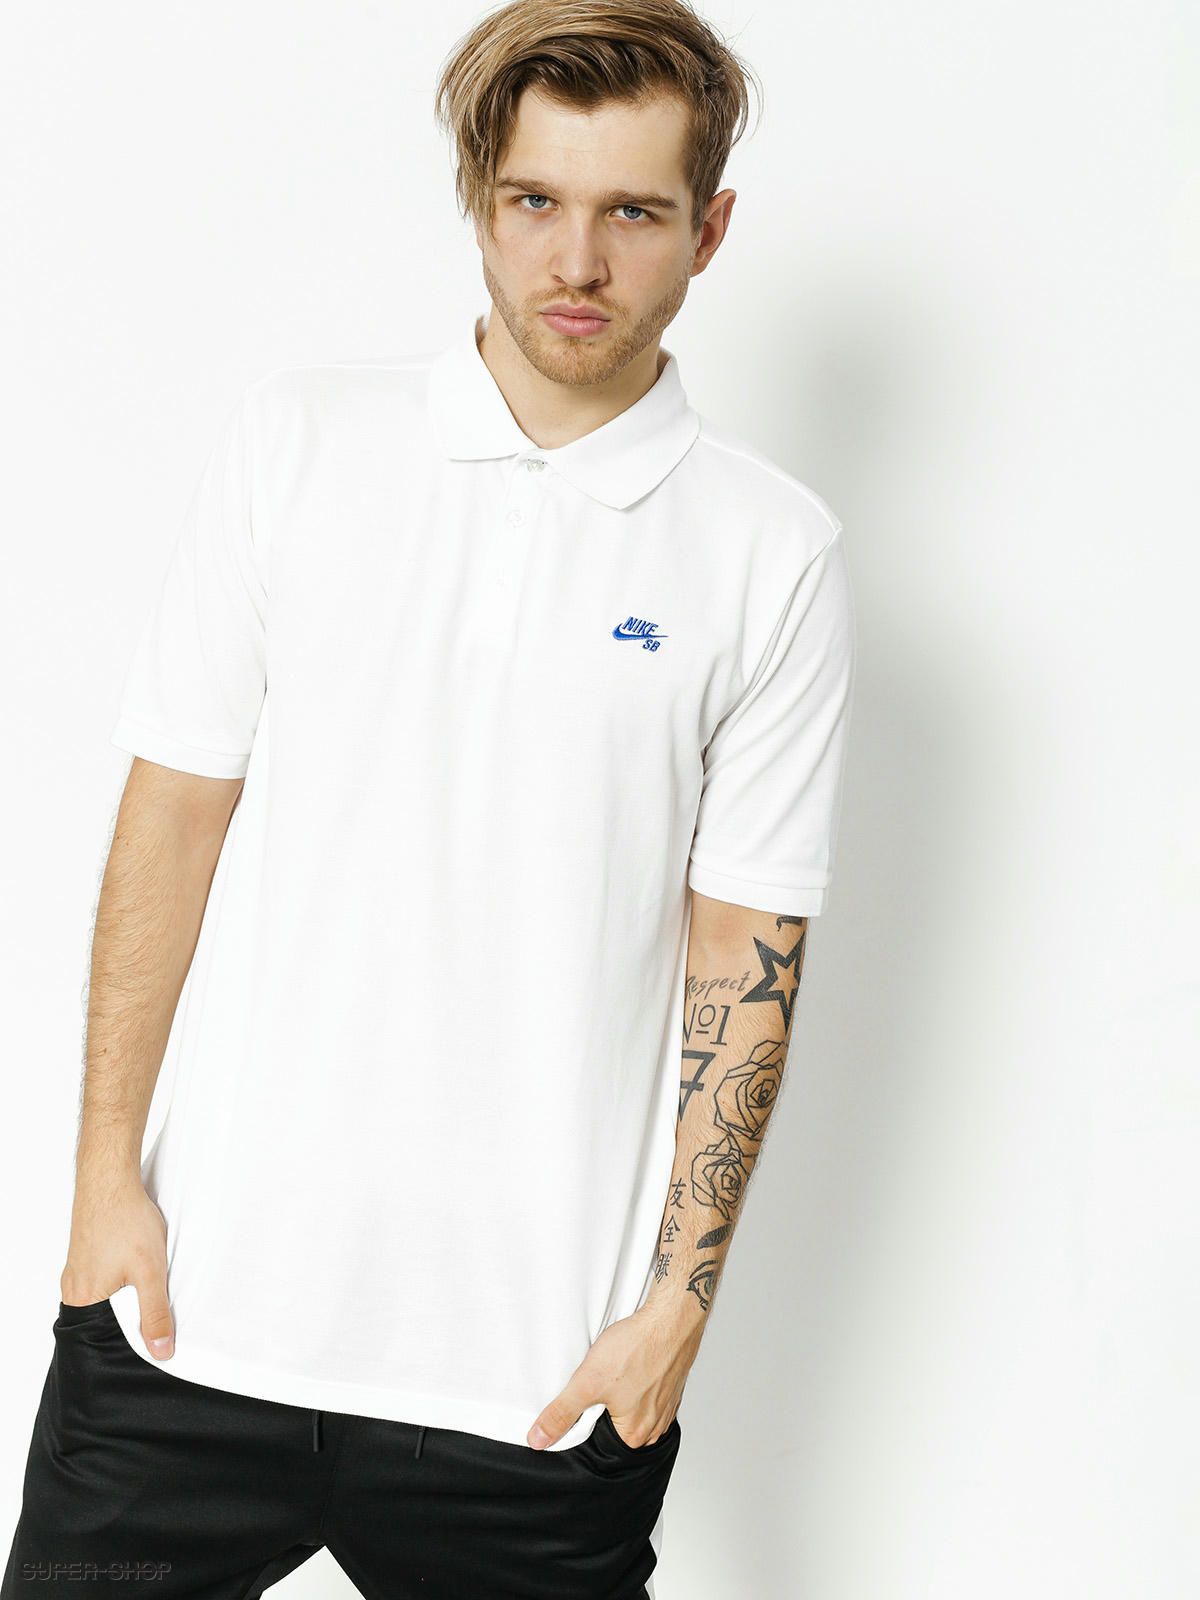 society Confession Cosmic Nike SB Polo t-shirt Sb Dri Fit Pique (white/hyper royal)